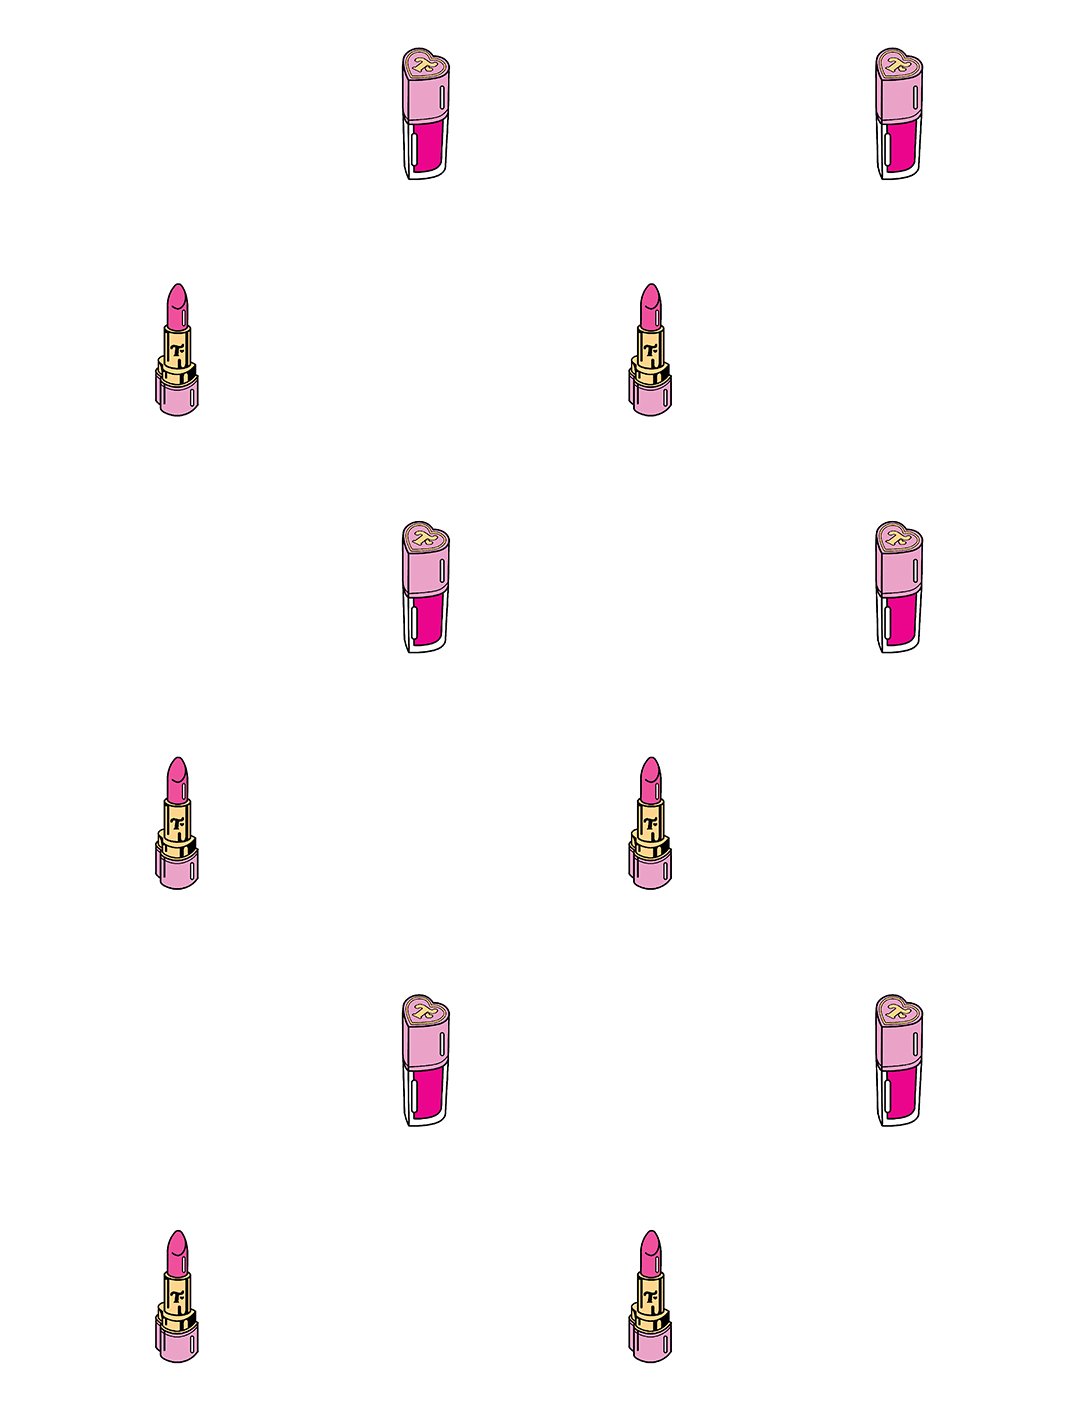 'Trixie Cosmetics' Wallpaper by Trixie Mattel - White